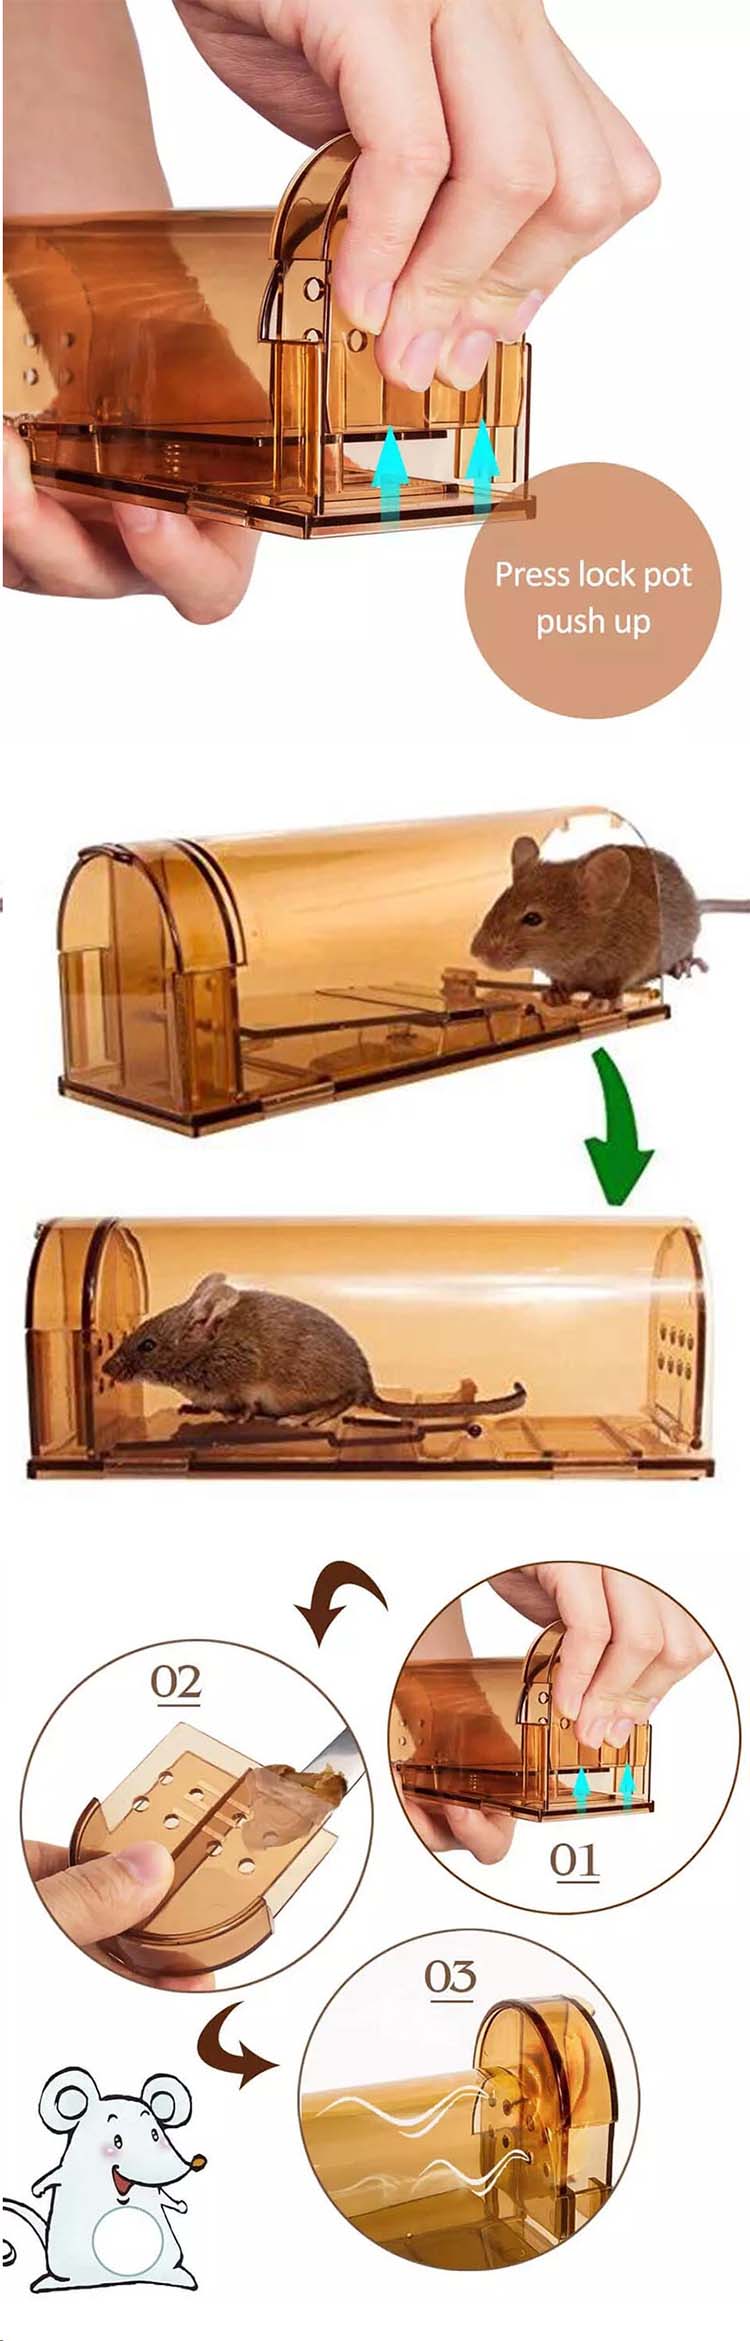 2019 Amazon Hot Verkoop Huishoudelijke Plastic Humane Live Catch Smart Mouse Rat Trap Mouse Trap Cage03